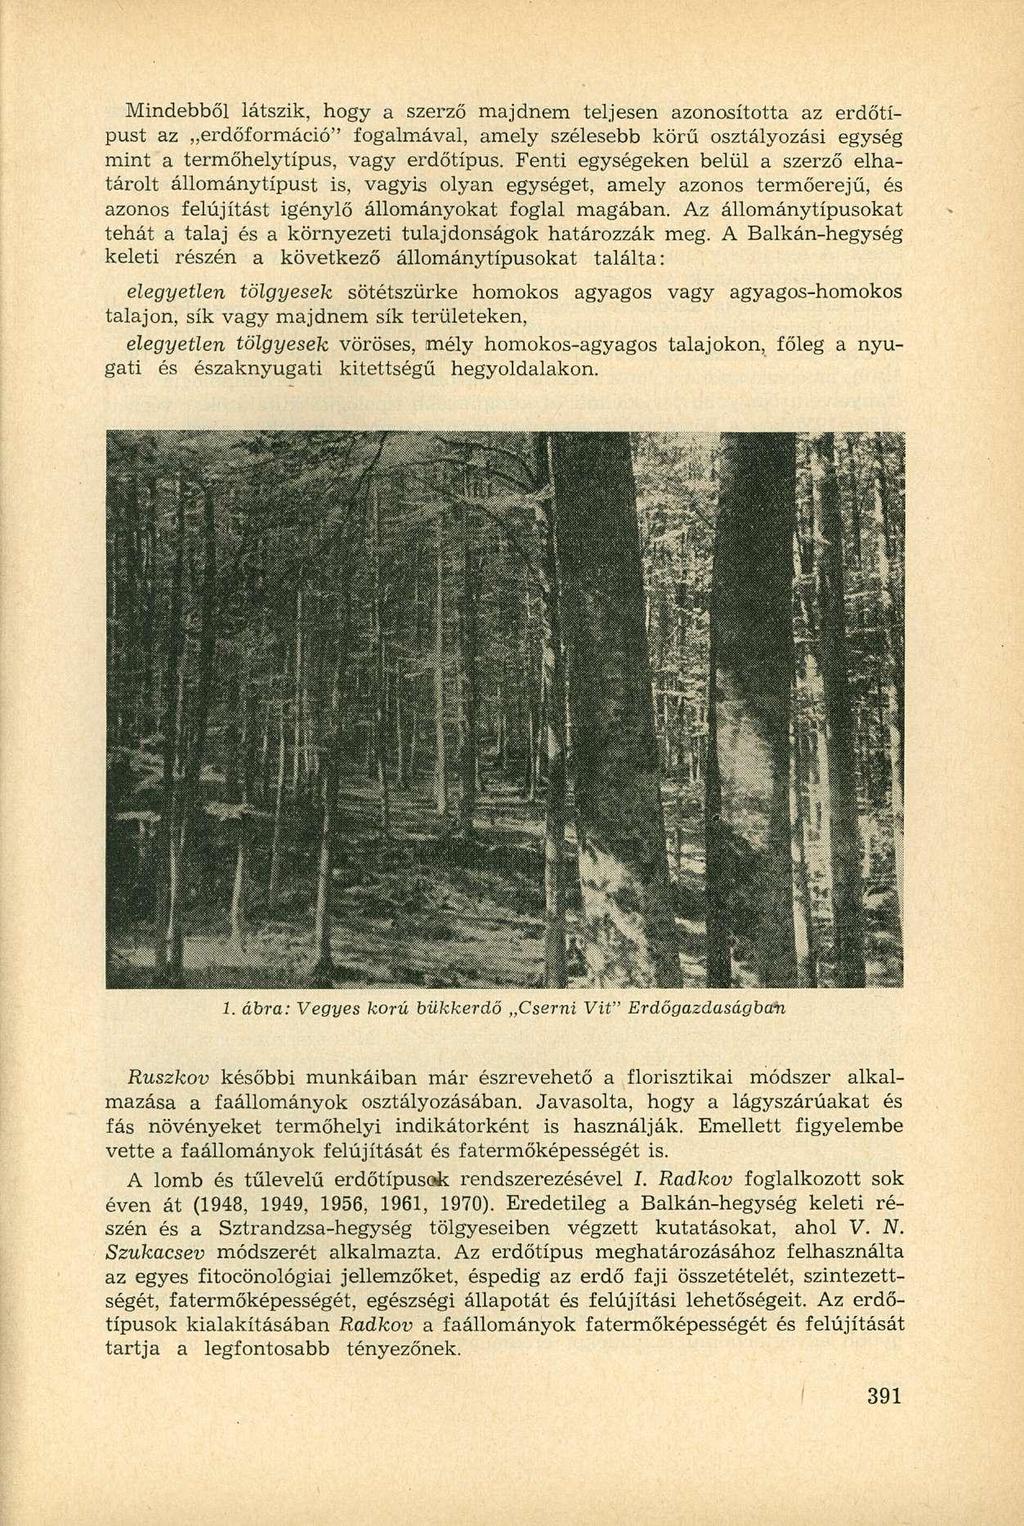 Mindebből látszik, hogy a szerző majdnem teljesen azonosította az erdőtípust az erdőformáció" fogalmával, amely szélesebb körű osztályozási egység mint a termőhelytípus, vagy erdőtípus.